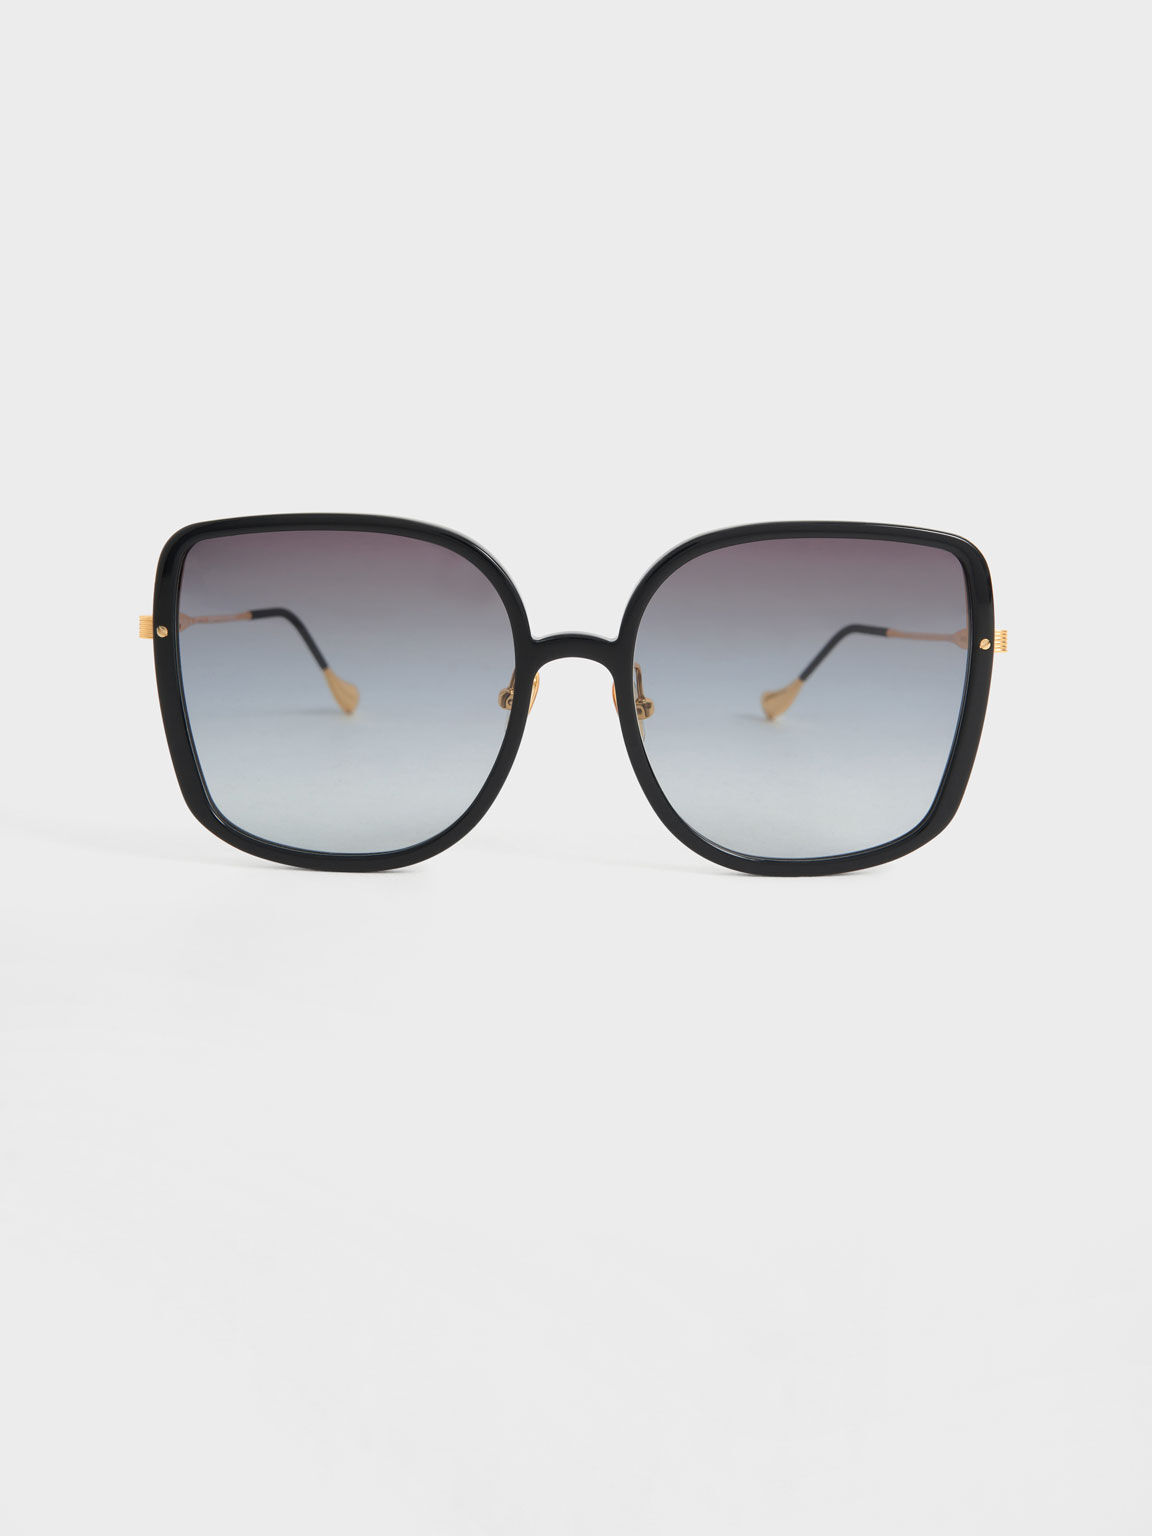 クアイオーストラリア レディース サングラス・アイウェア アクセサリー BLACK SMOKE Sign Dollar 55mm Sunglasses  Polarized Square POLARIZED 眼鏡・サングラス | kyoko-co.com